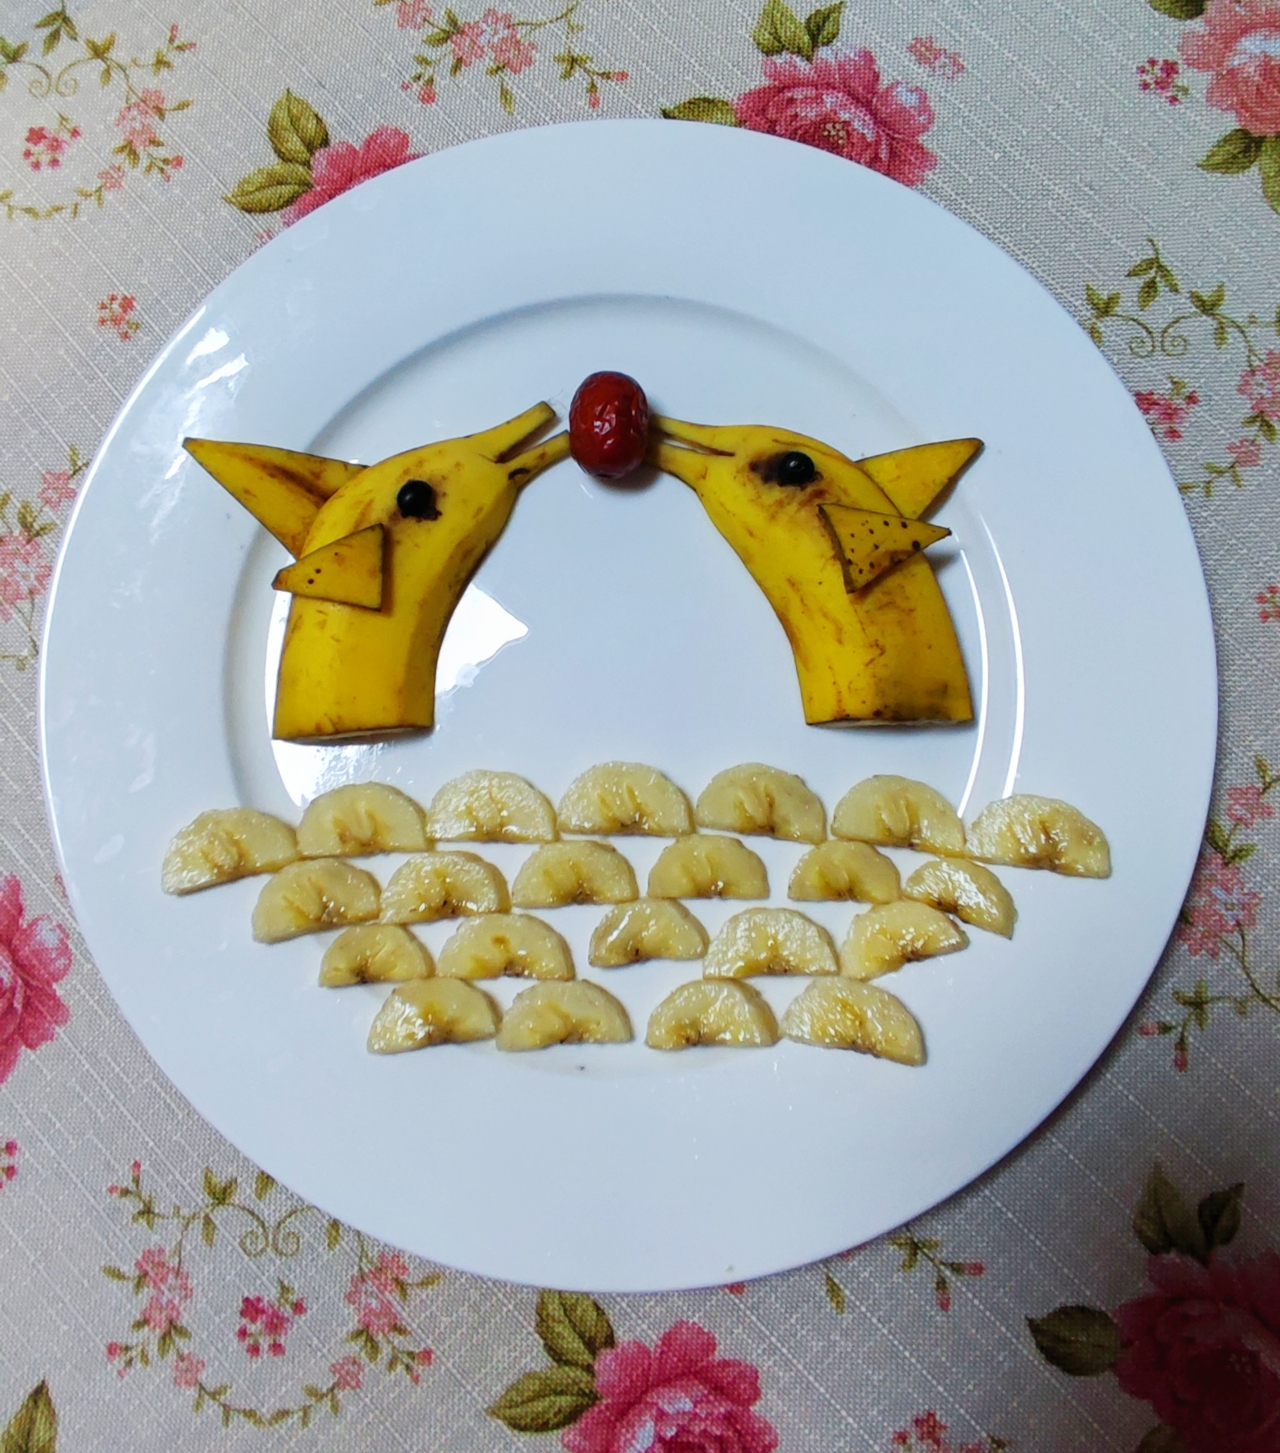 水果拼盘创意海豚香蕉水果切